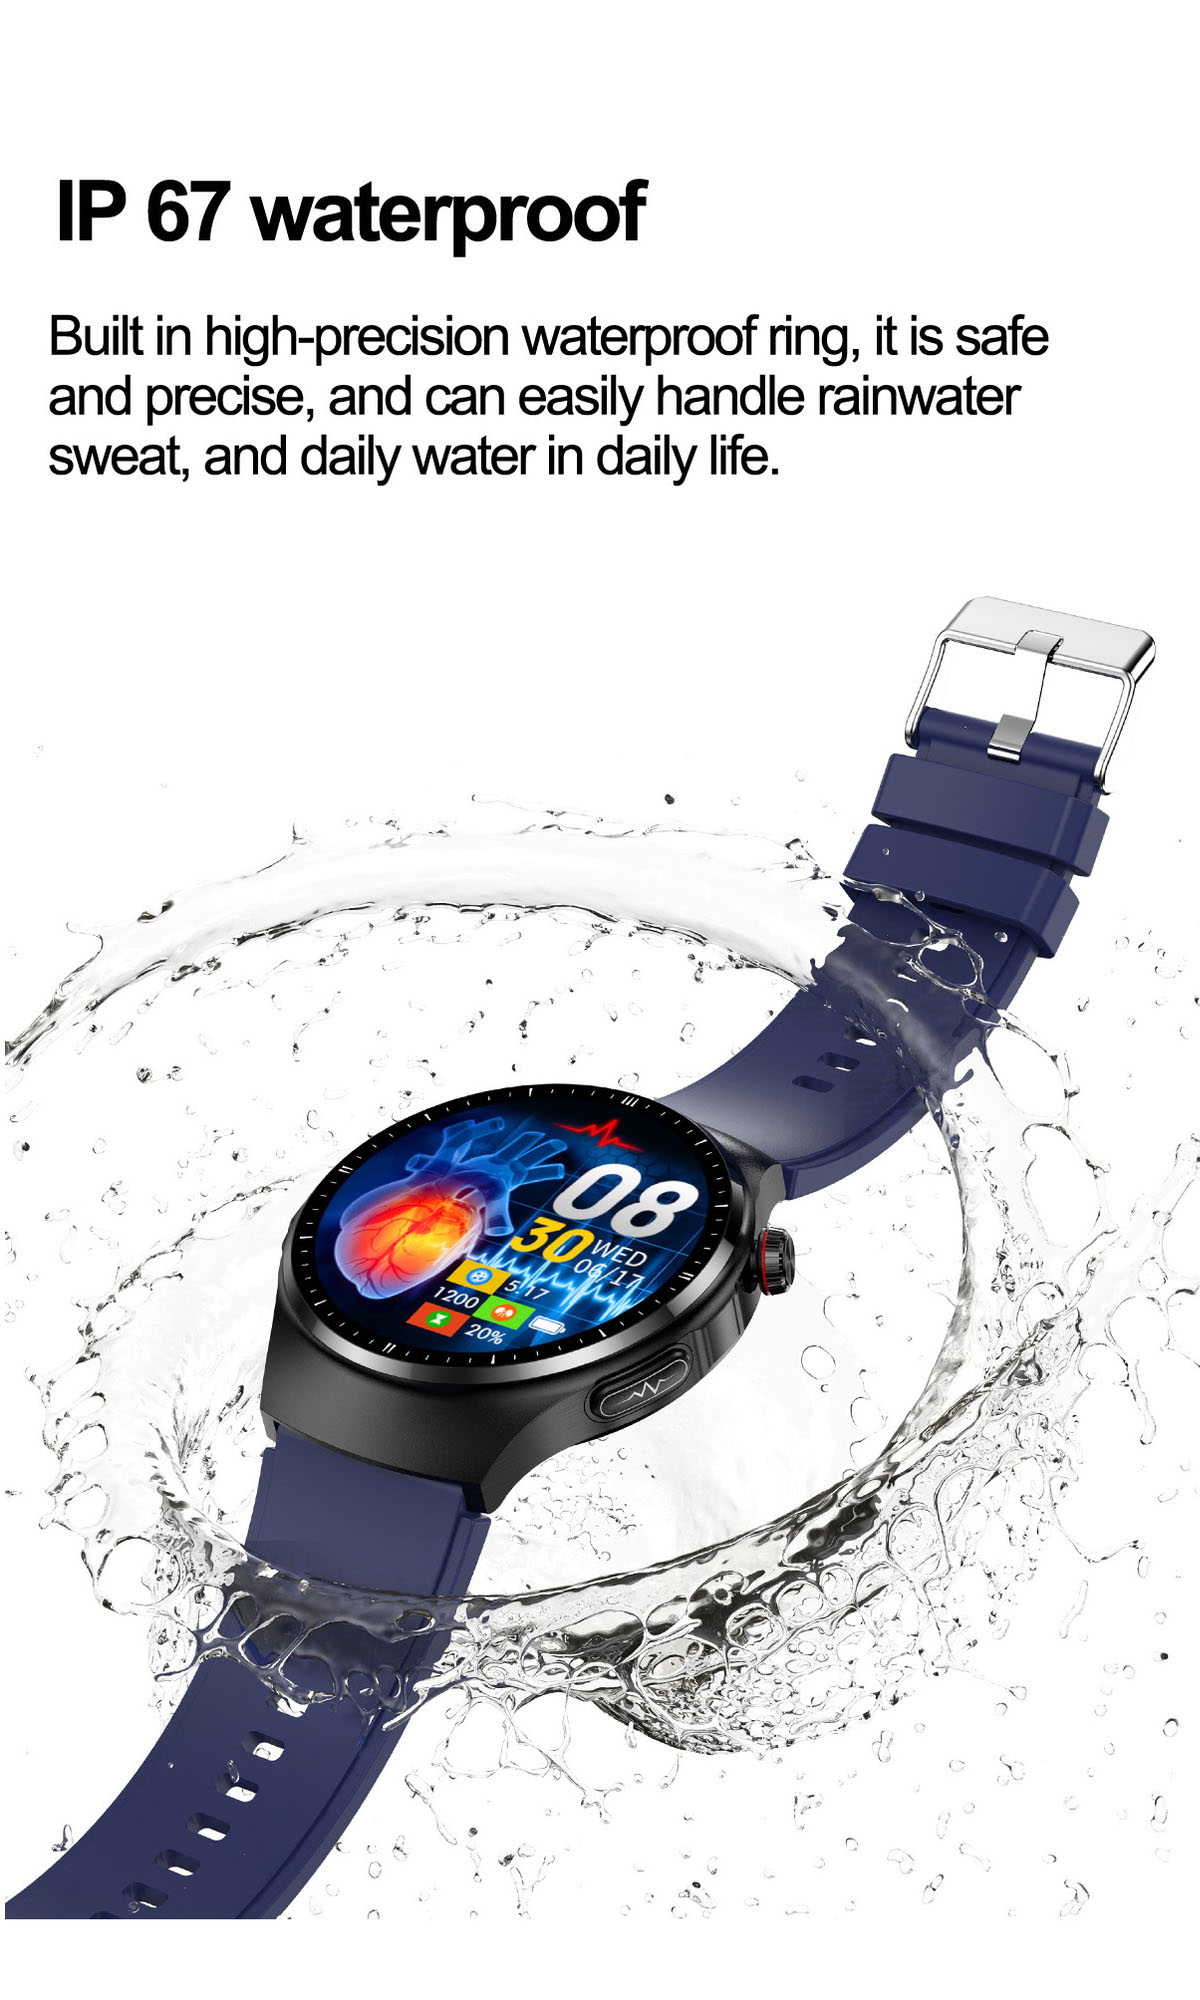 und Braun Gesundheit - Umfassendes BRIGHTAKE für Smartwatch Gesundheitsmonitoring mehr Ihre Leder, Smartwatch